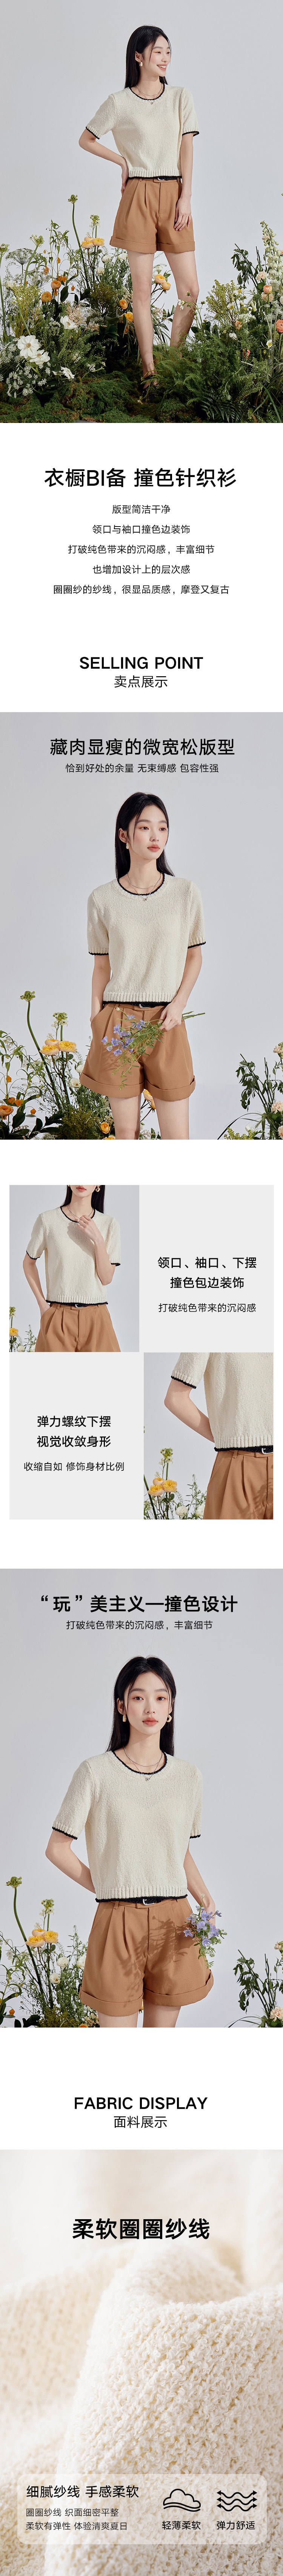 【中国直邮】HSPM 新款圆领撞色包边显瘦短袖针织衫 米色 S